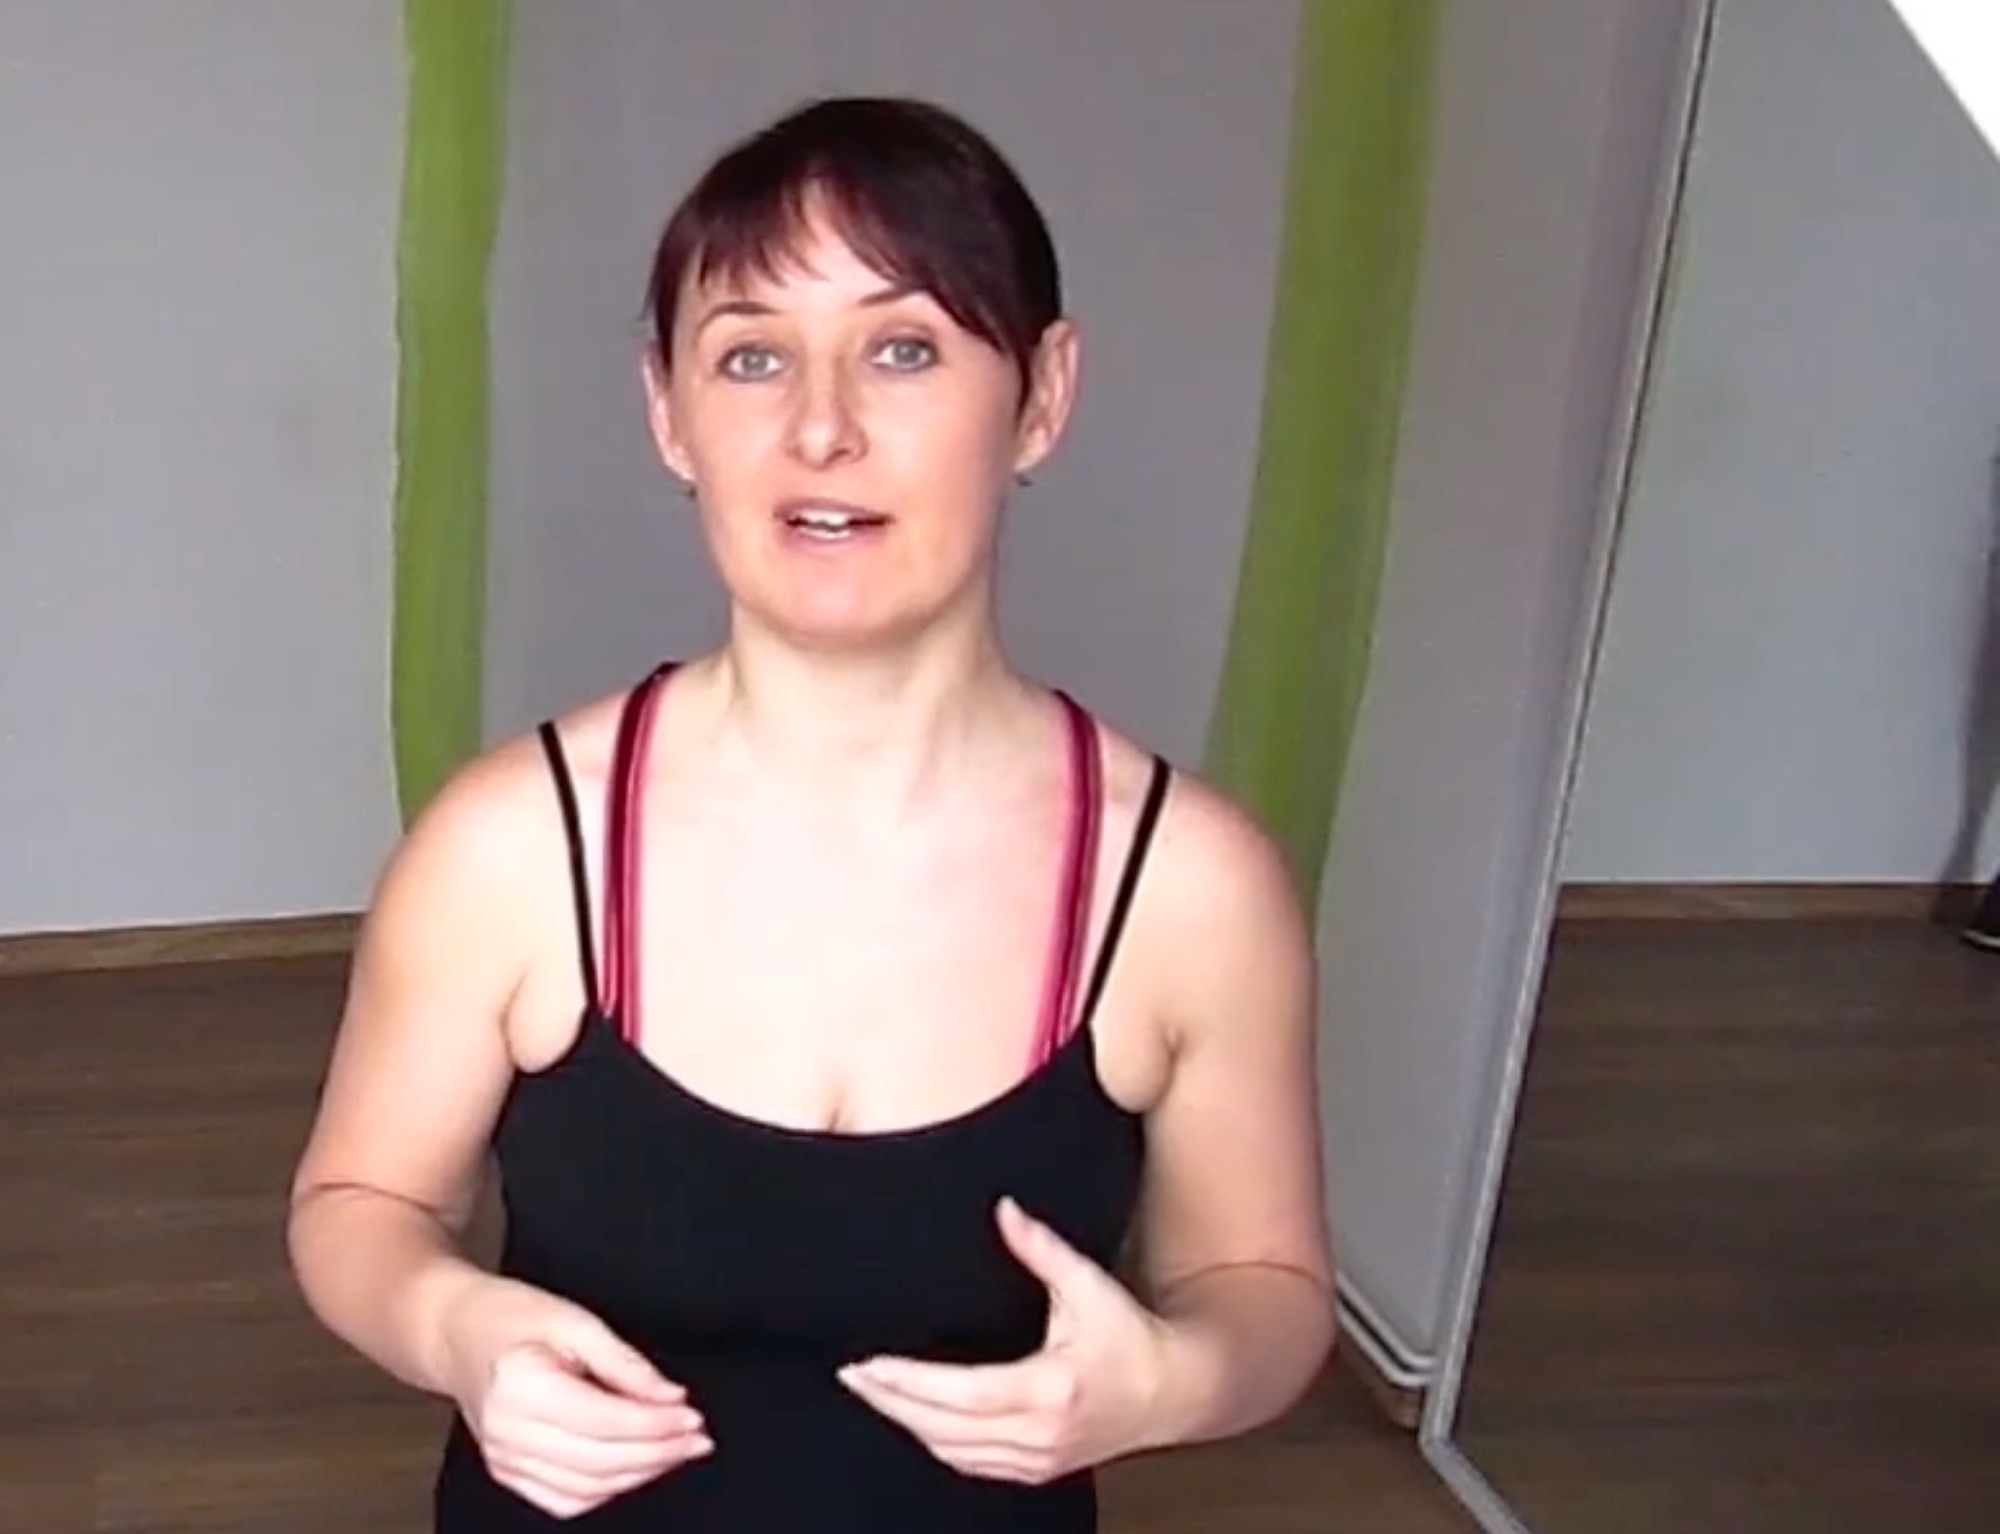 Jolana Novotná: Pilates pro začátečníky